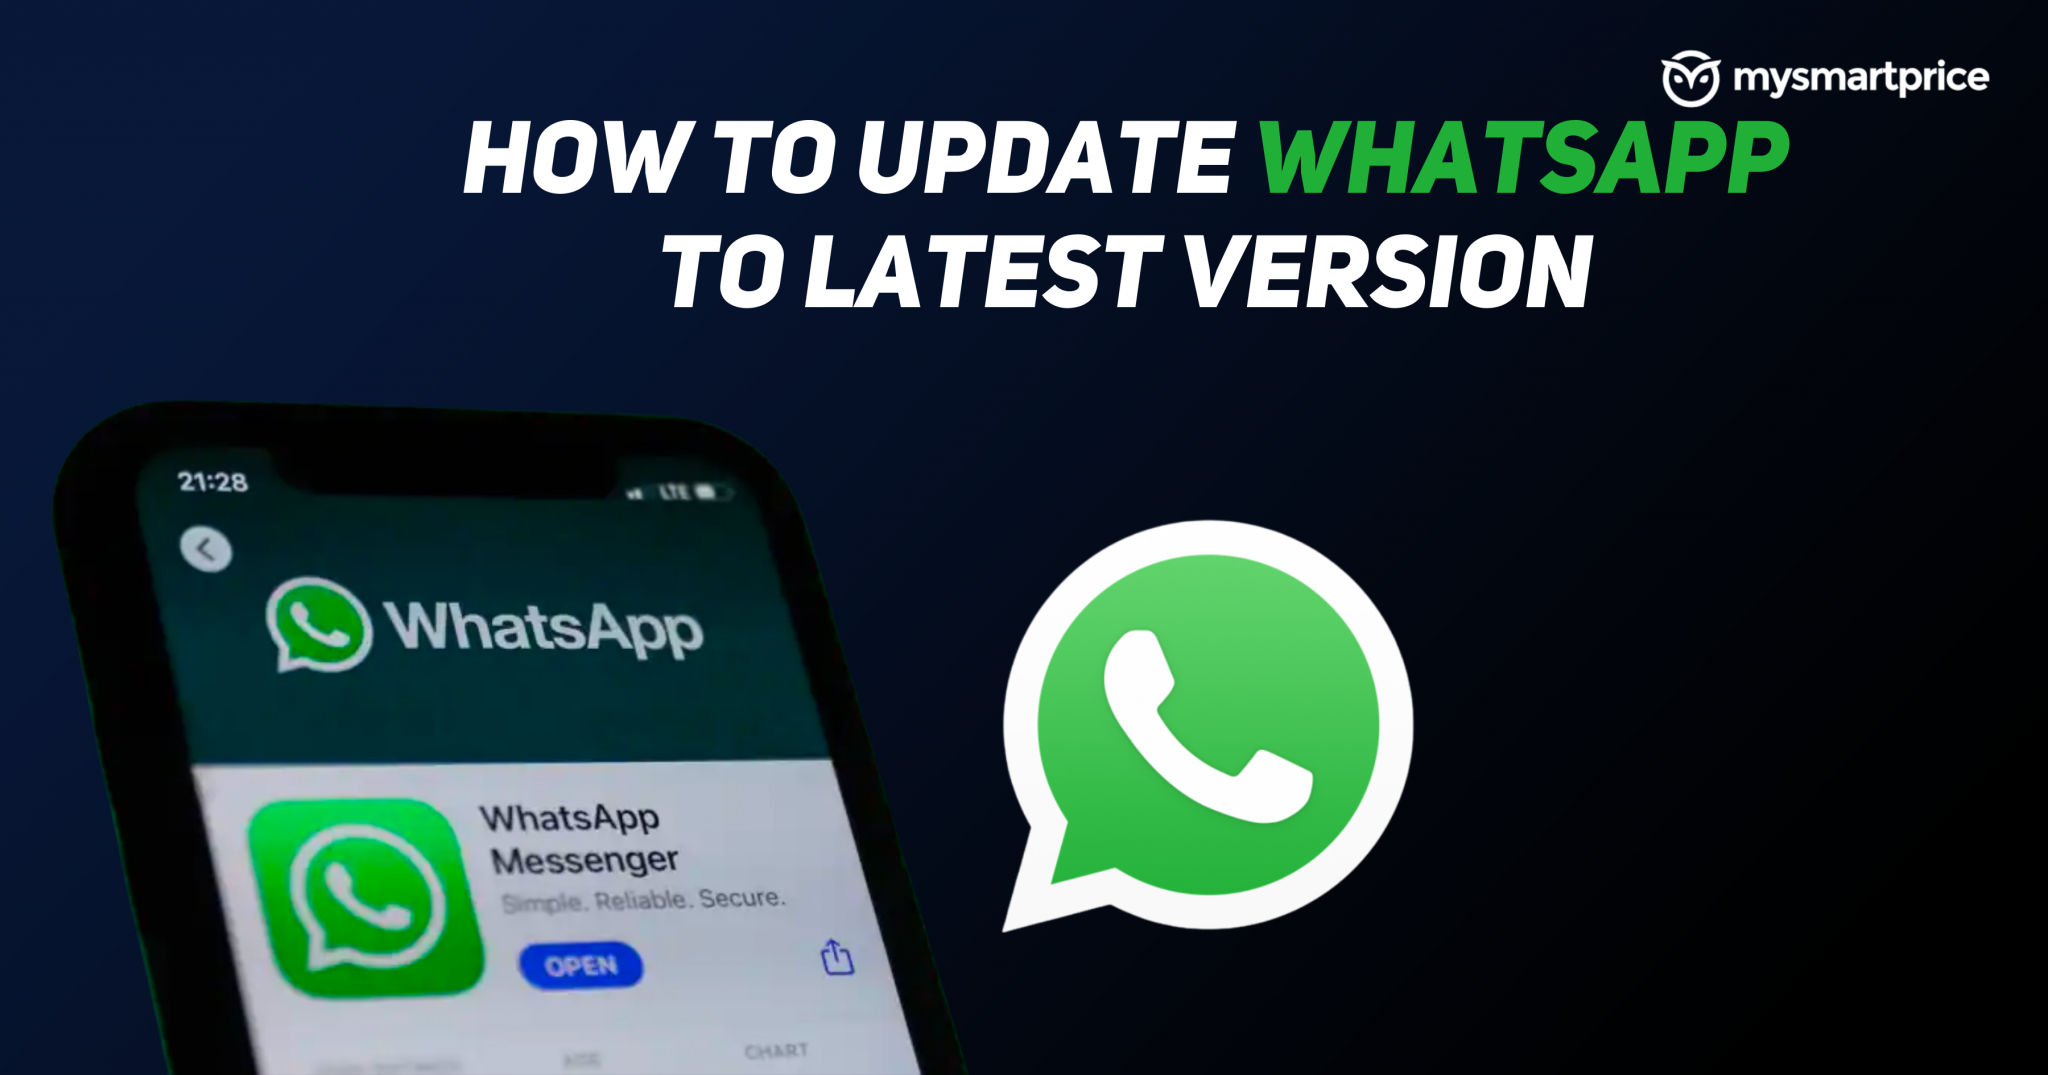 update new version of whatsapp